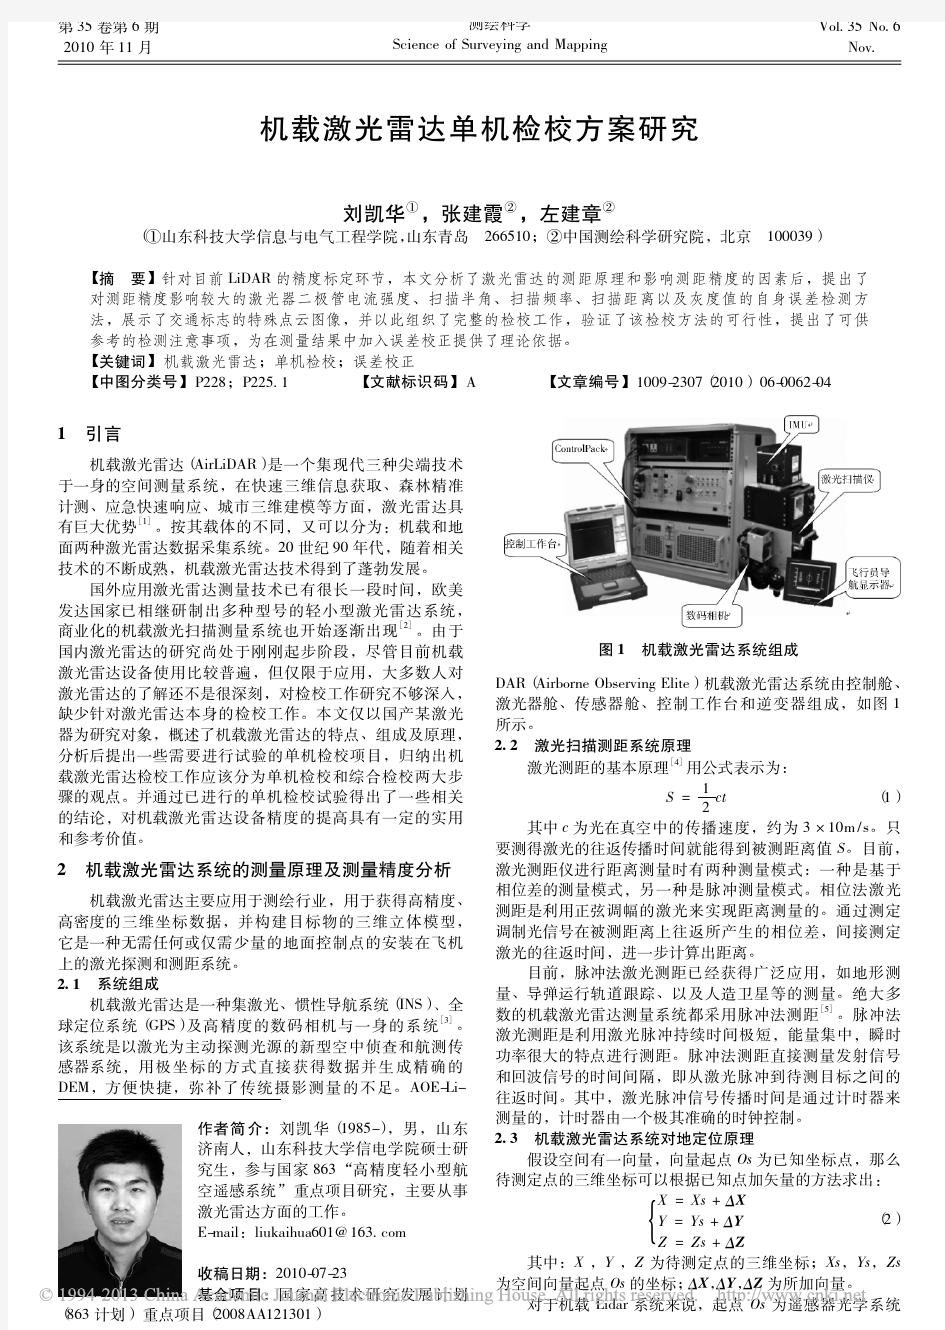 机载激光雷达单机检校方案研究_刘凯华